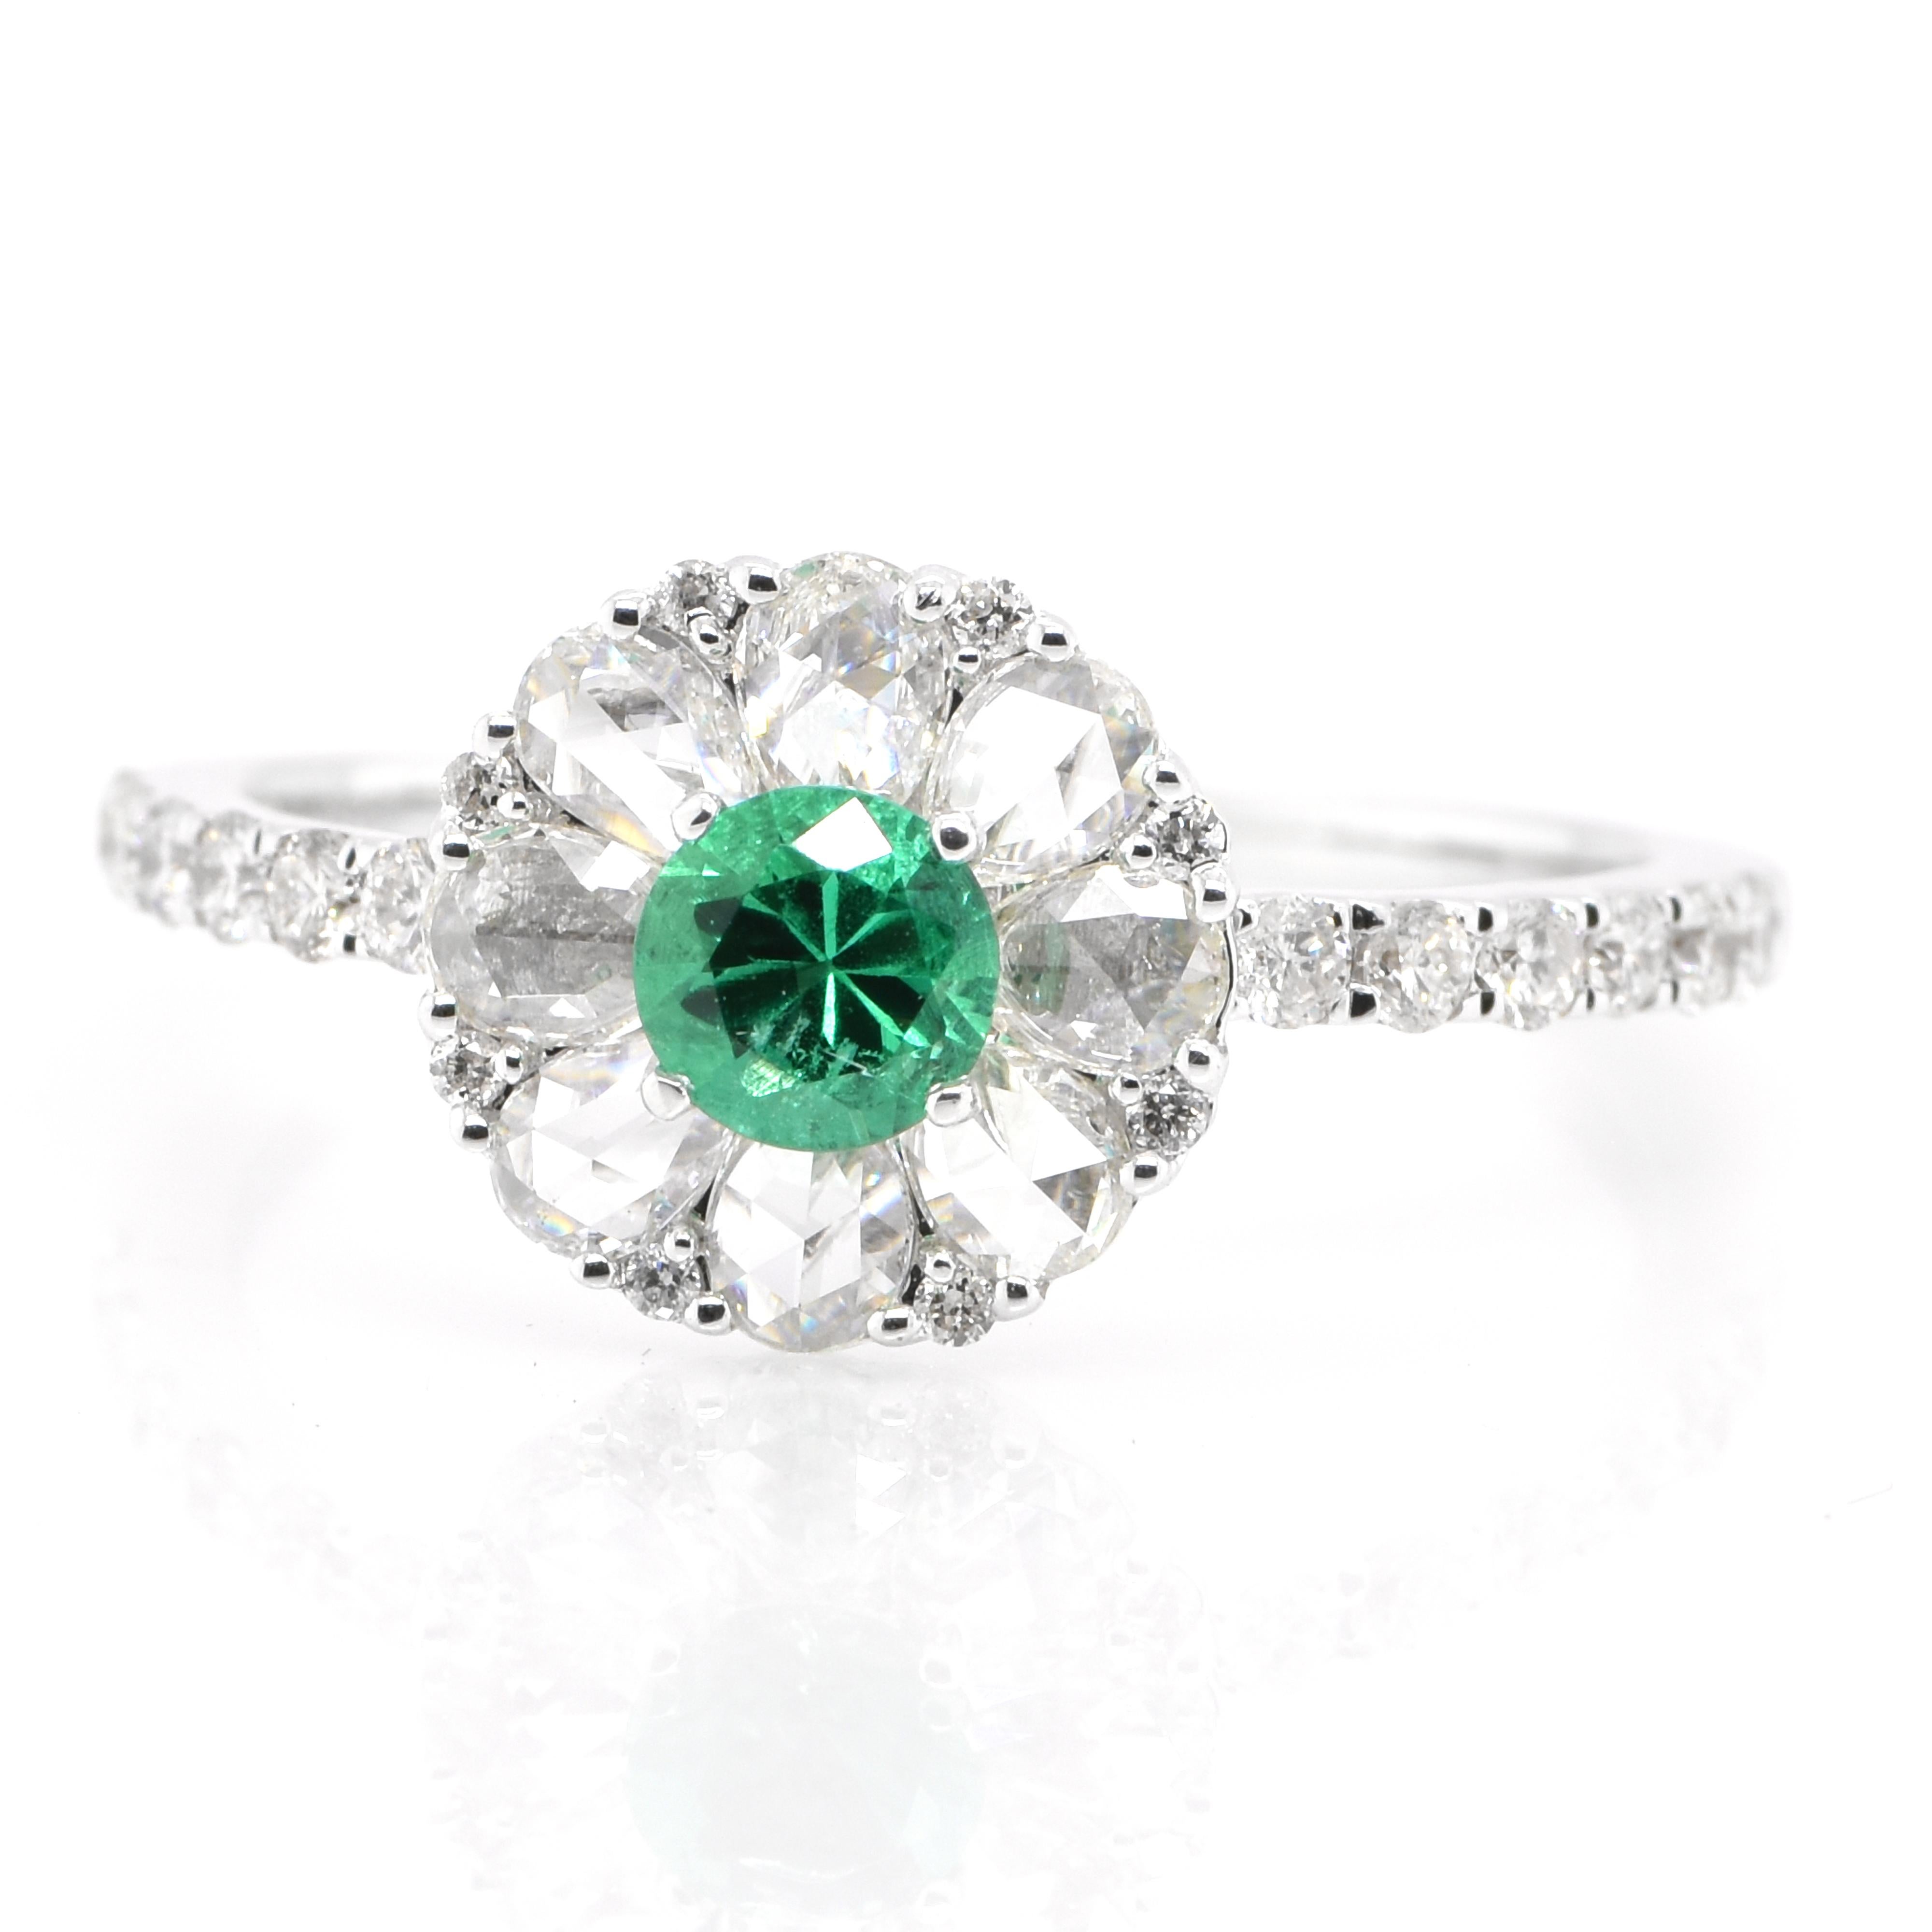 Ein atemberaubender Ring mit einem natürlichen Smaragd von 0,26 Karat und Diamanten von 0,80 Karat, gefasst in 18 Karat Weißgold. Seit Tausenden von Jahren bewundern die Menschen das Grün des Smaragds. Smaragde werden seit jeher mit den üppigsten